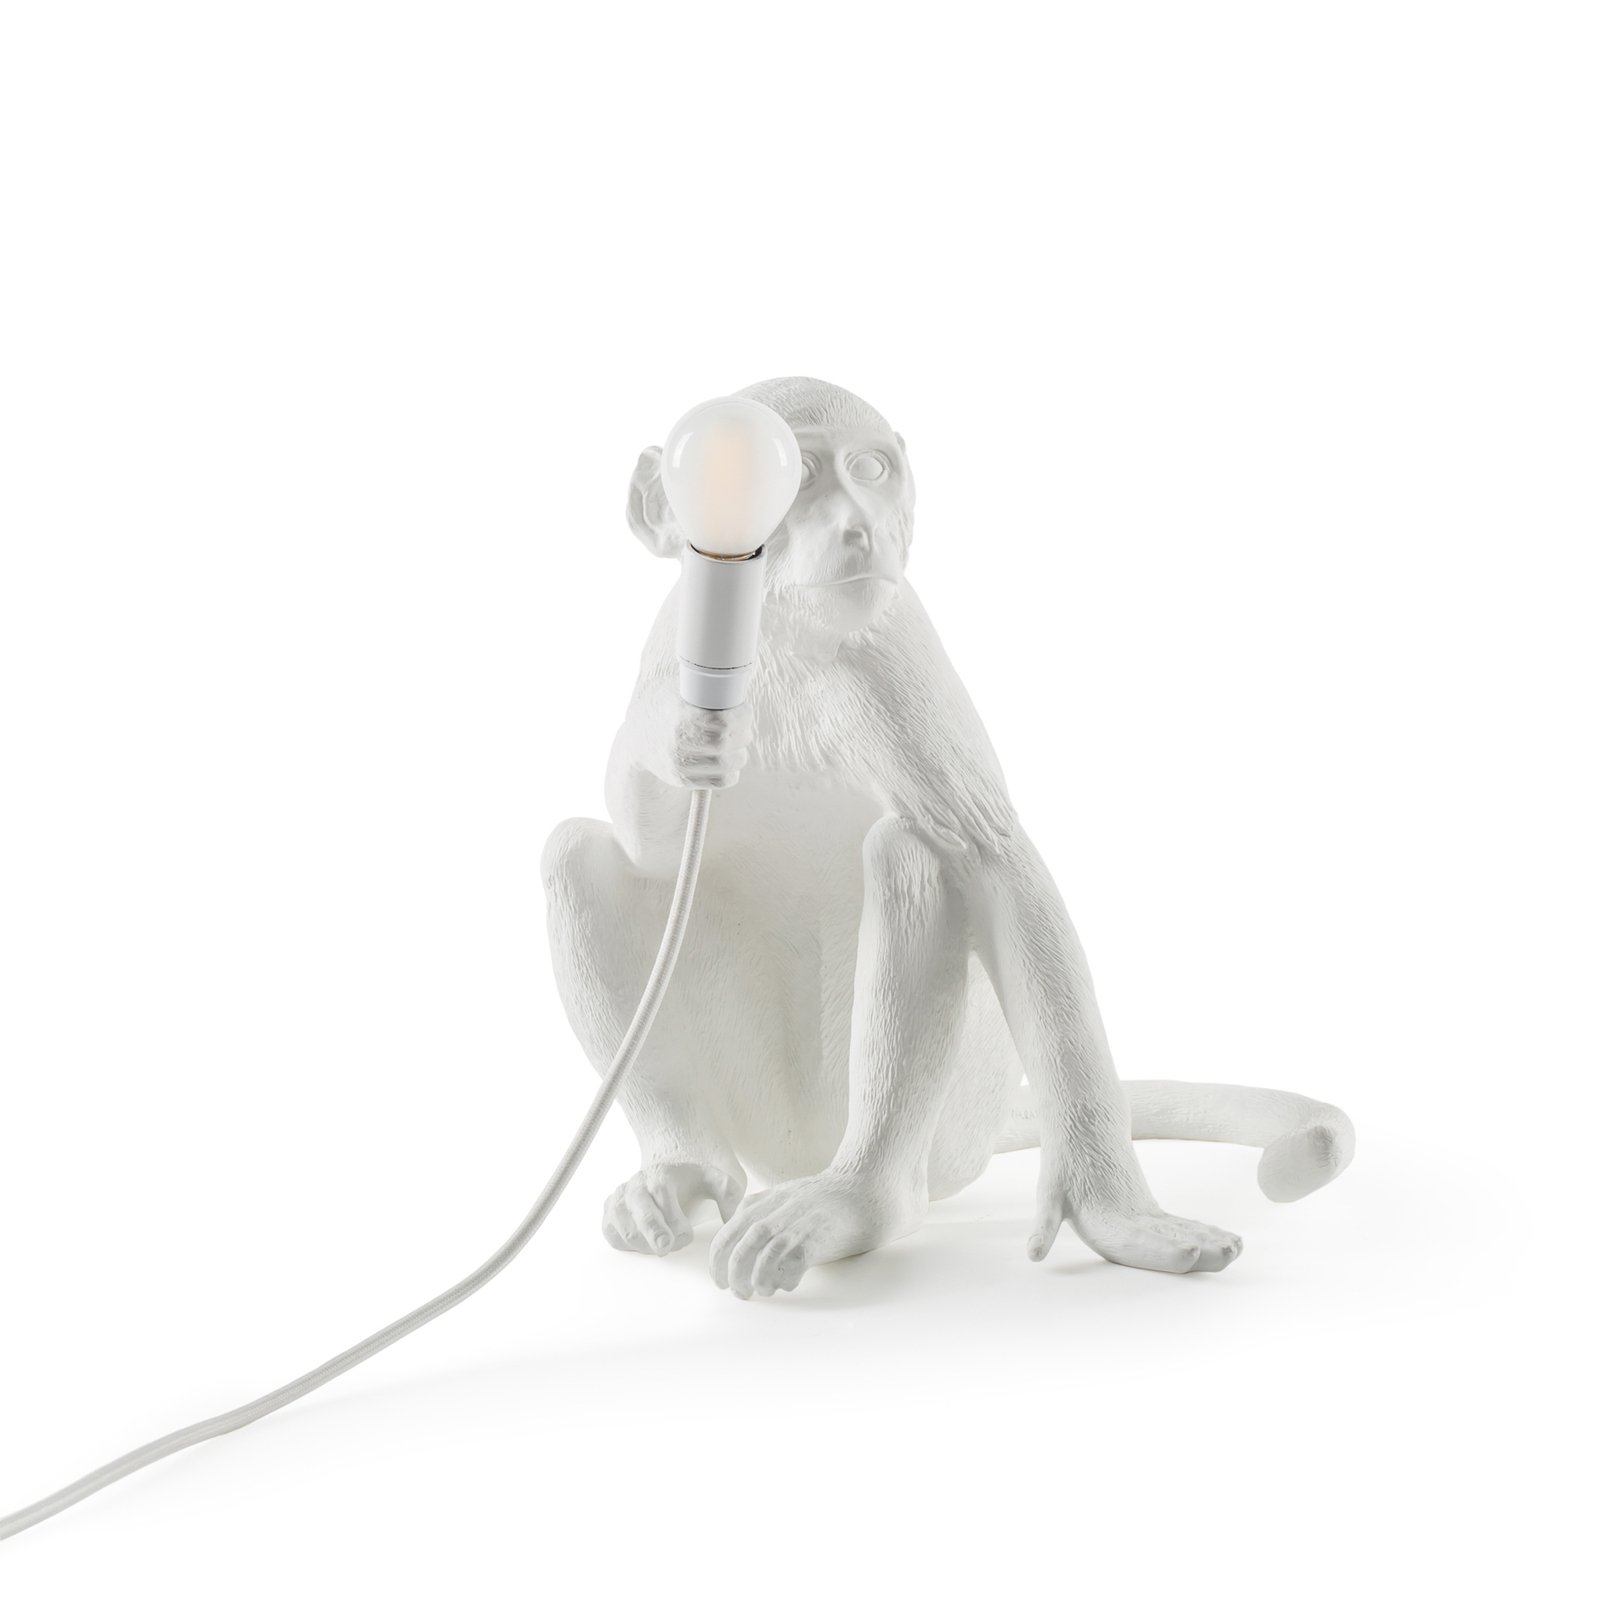 SELETTI Monkey Lamp LED-Dekolampe, weiß, sitzend